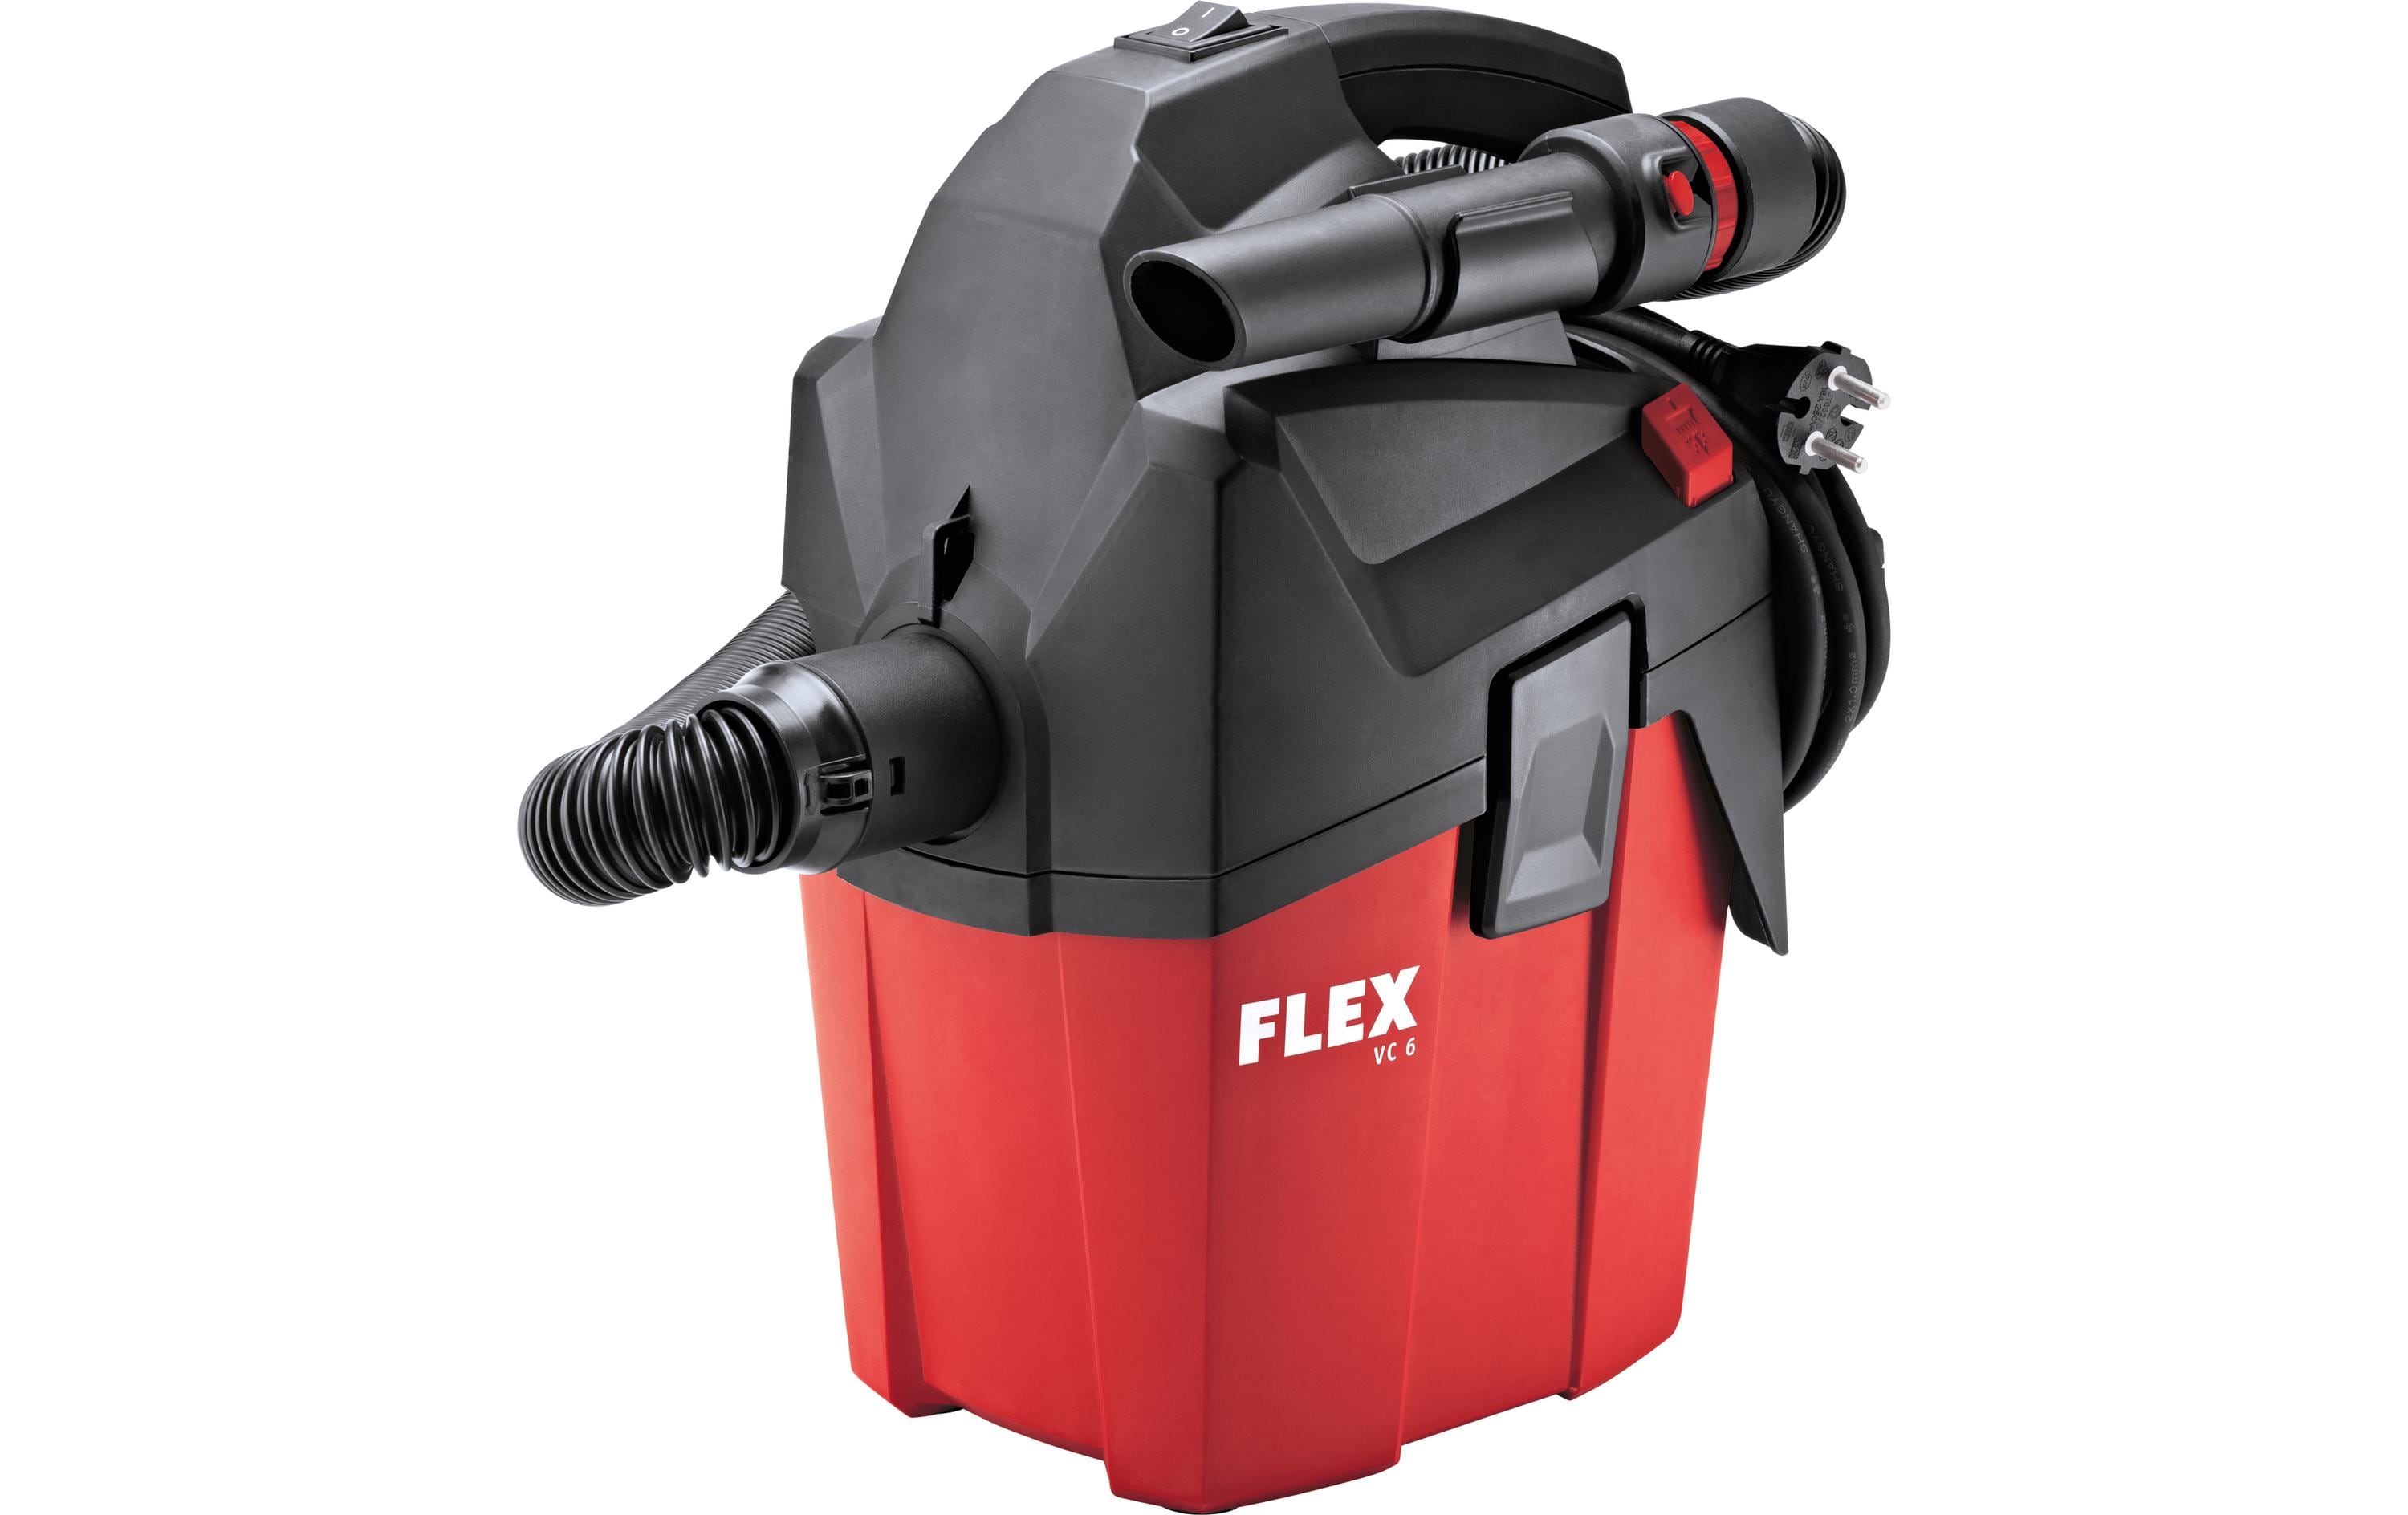 Flex Industriesauger VC 6 L MC